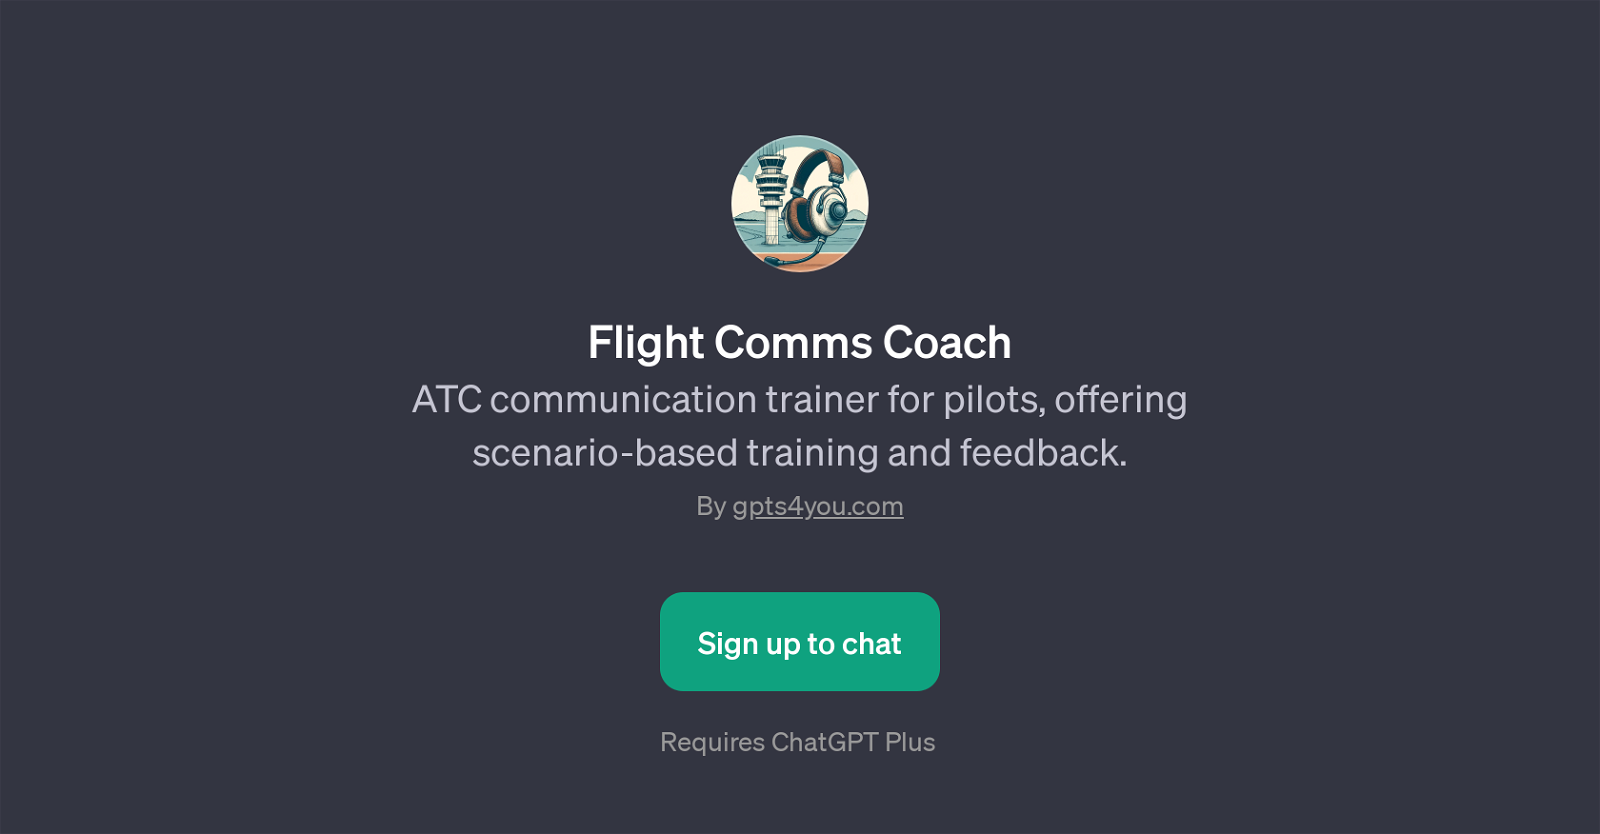 Flight Comms Coach website